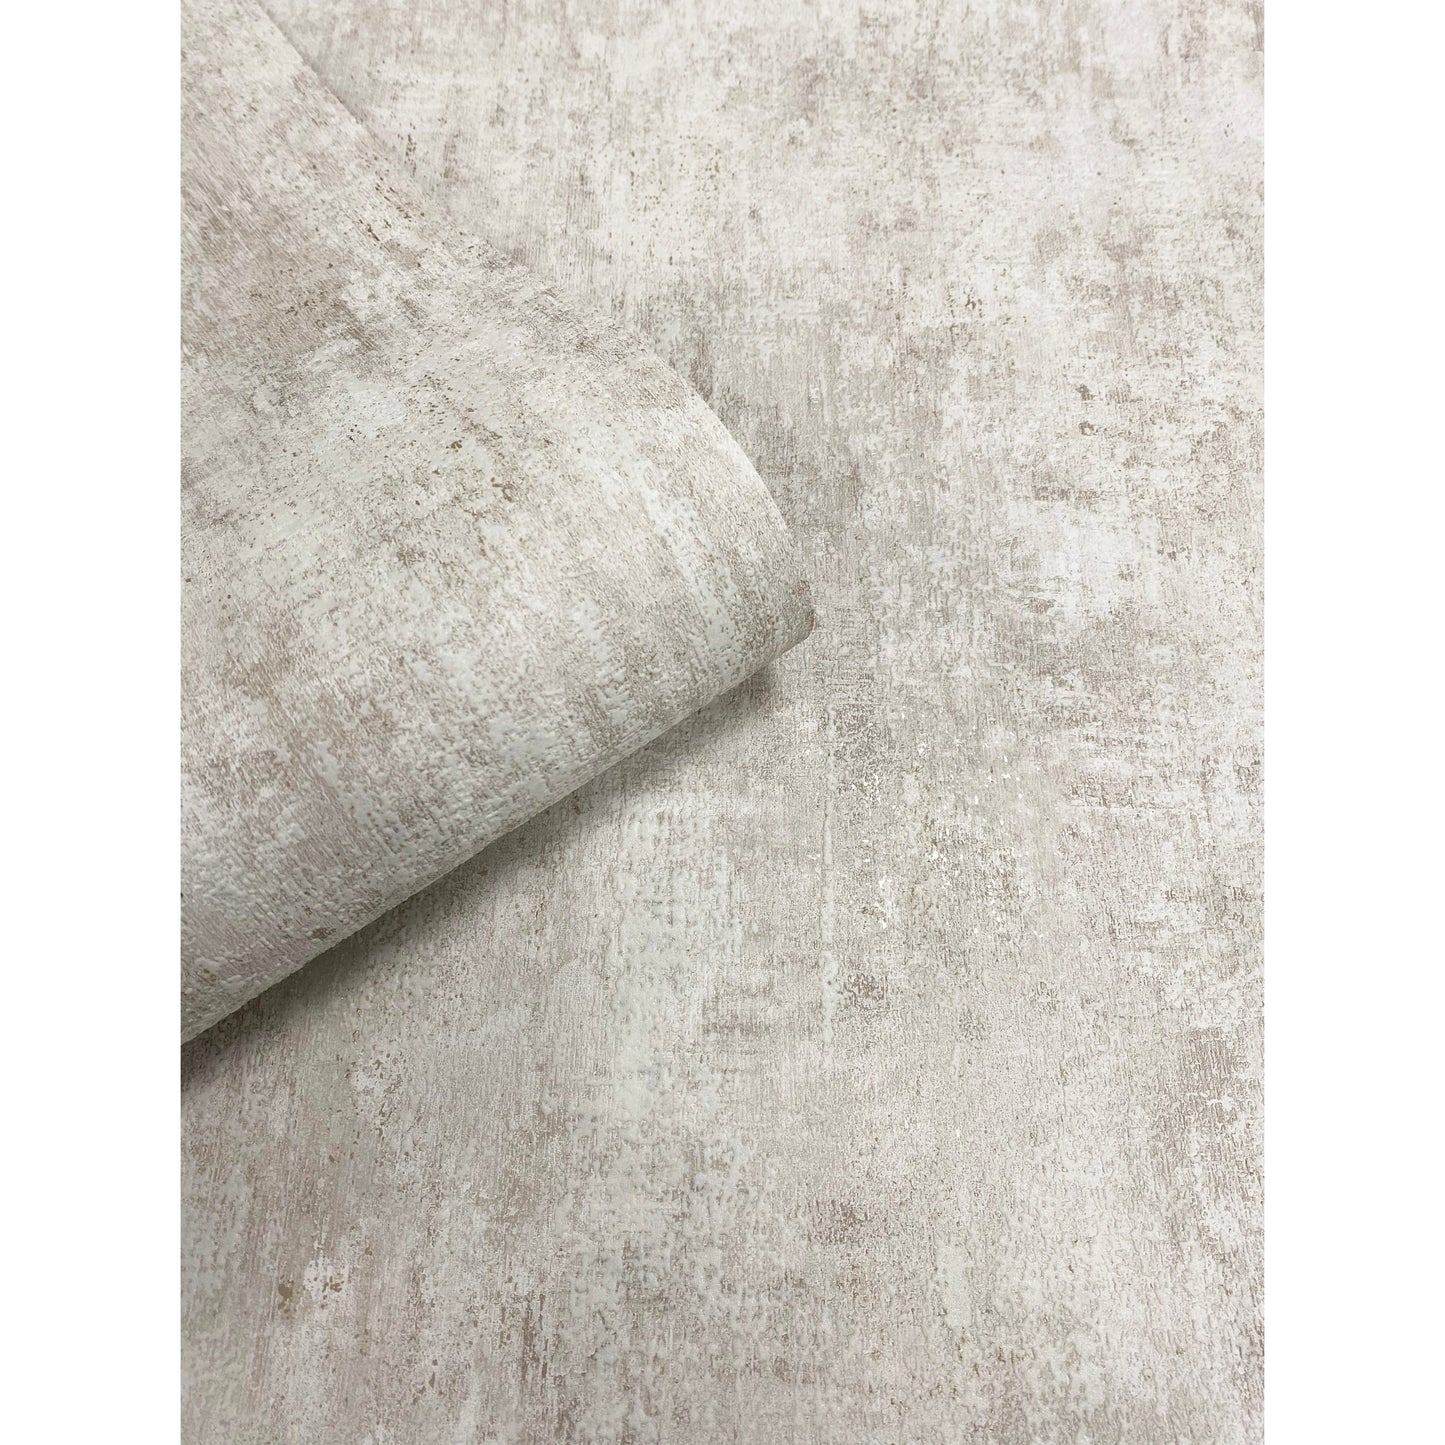 Muriva Phelan Texture Cream Wallpaper (209102)